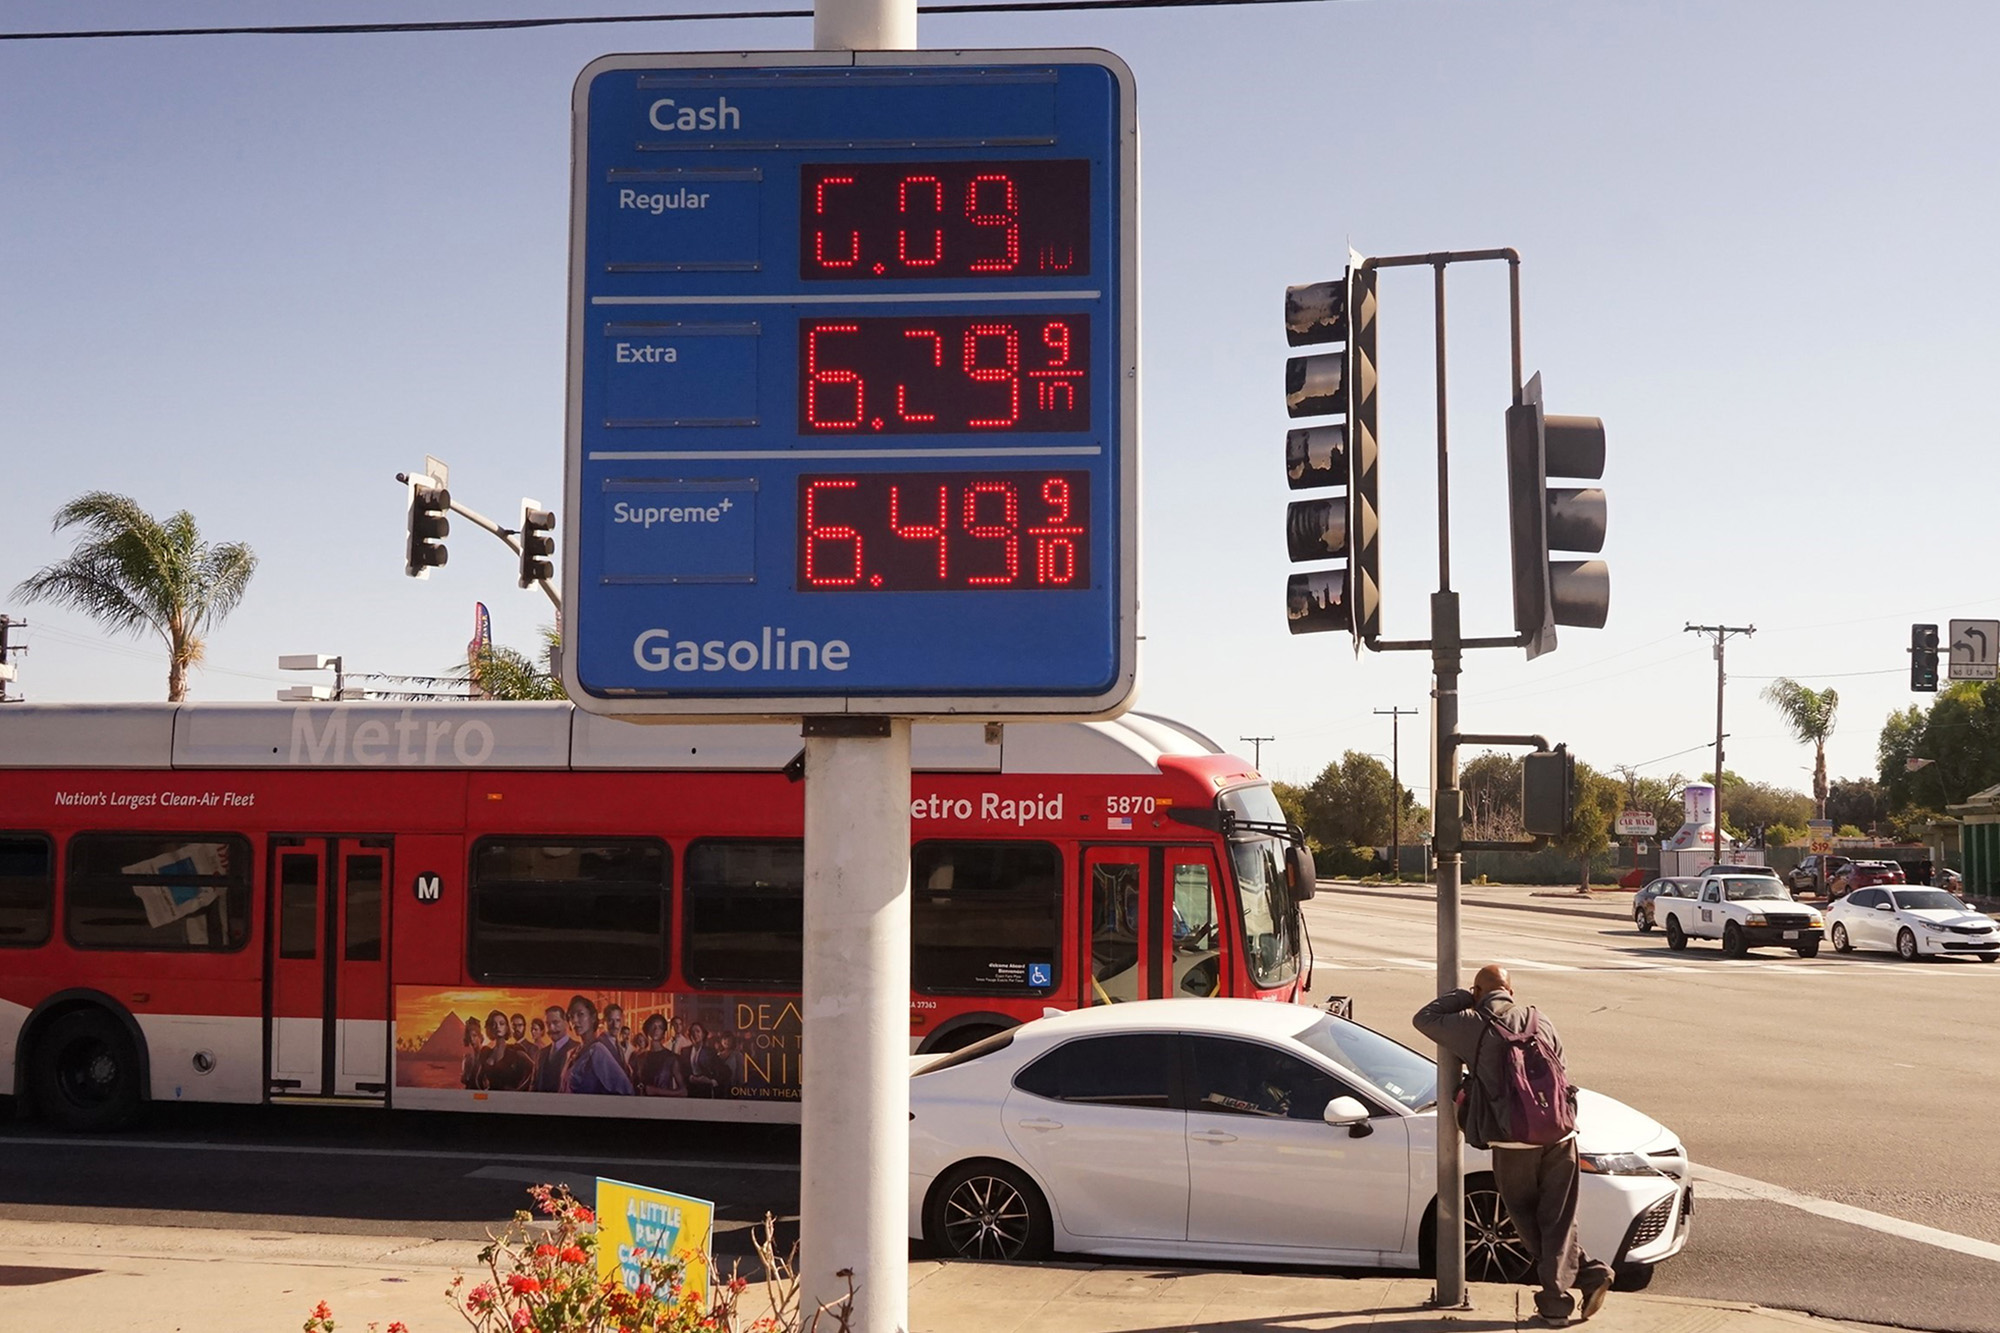 Цените на сите горива станаа троцифрени